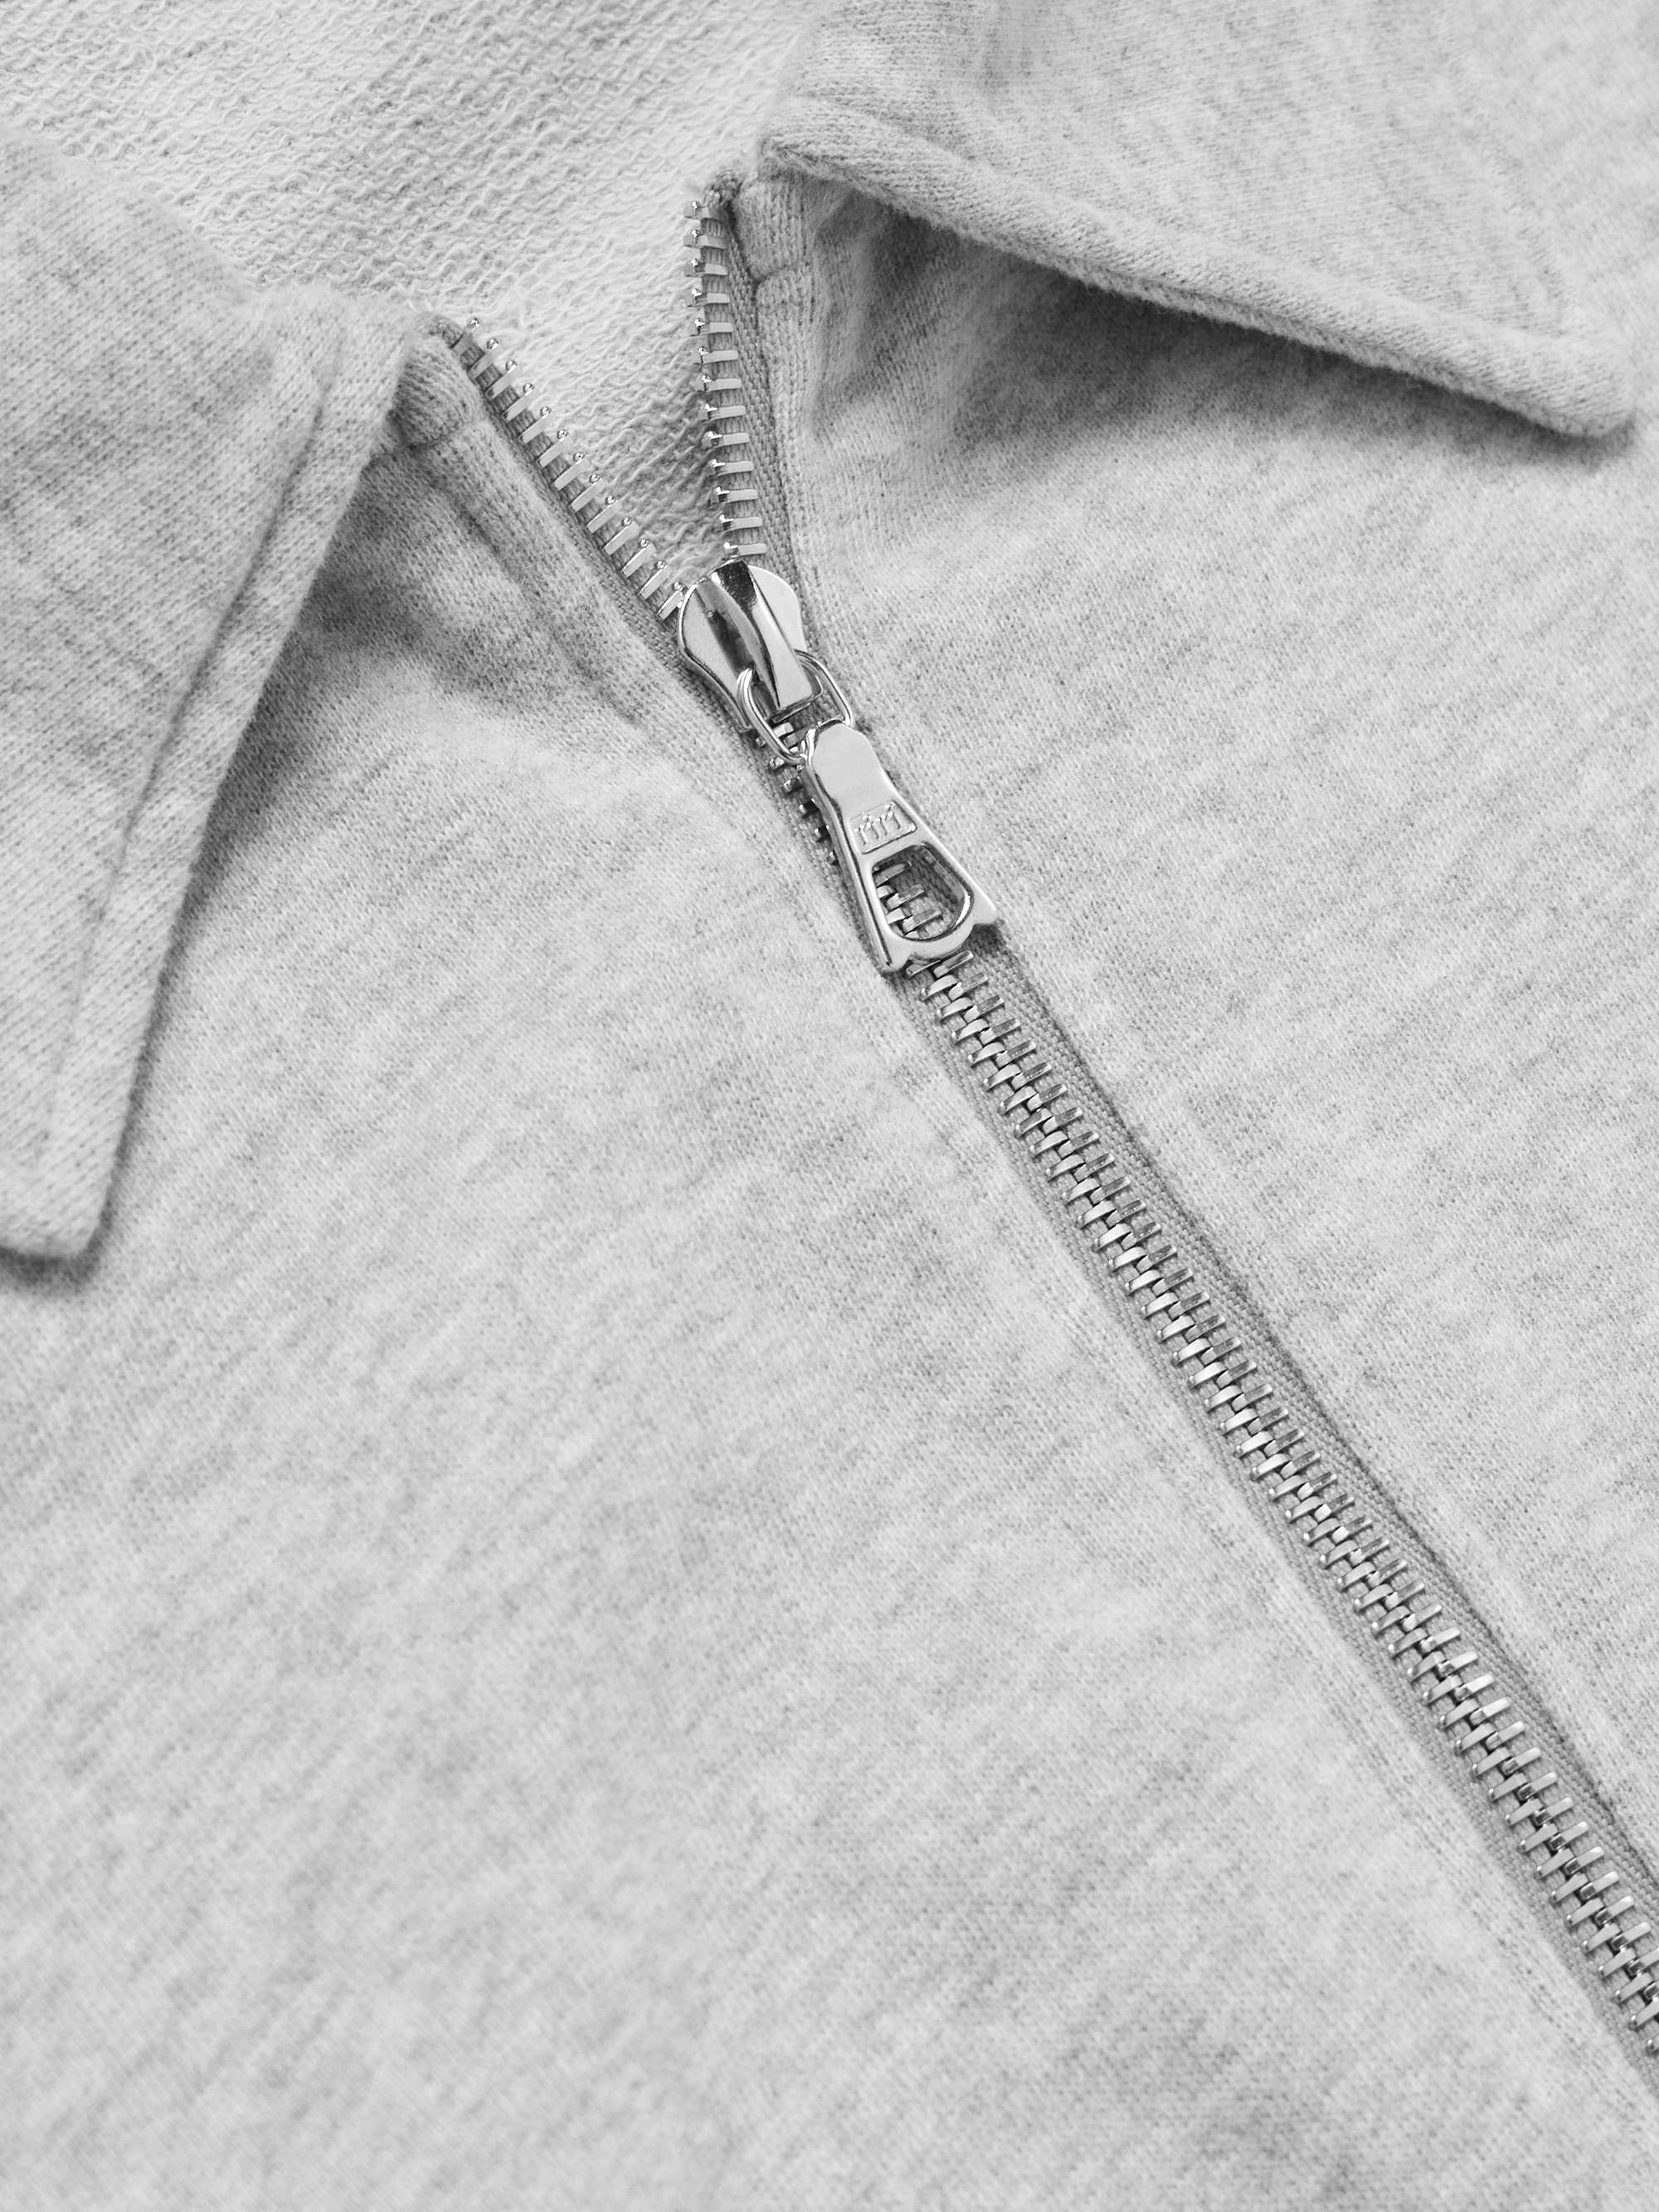 OFFICINE GÉNÉRALE Esborn Cotton-Jersey Zip-Up Sweatshirt for Men | MR ...